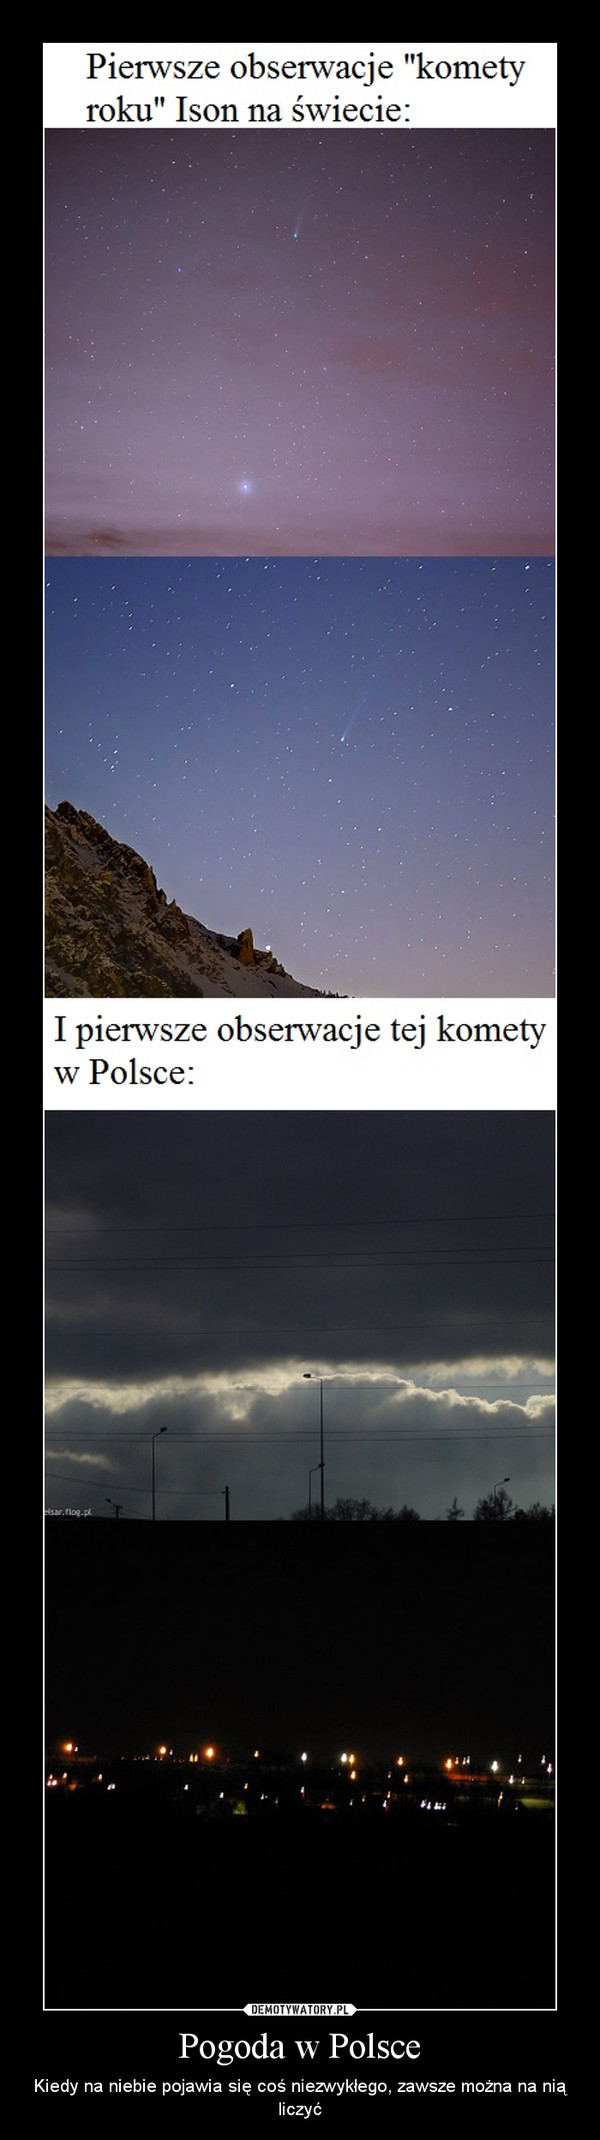 Pogoda w Polsce – Kiedy na niebie pojawia się coś niezwykłego, zawsze można na nią liczyć 